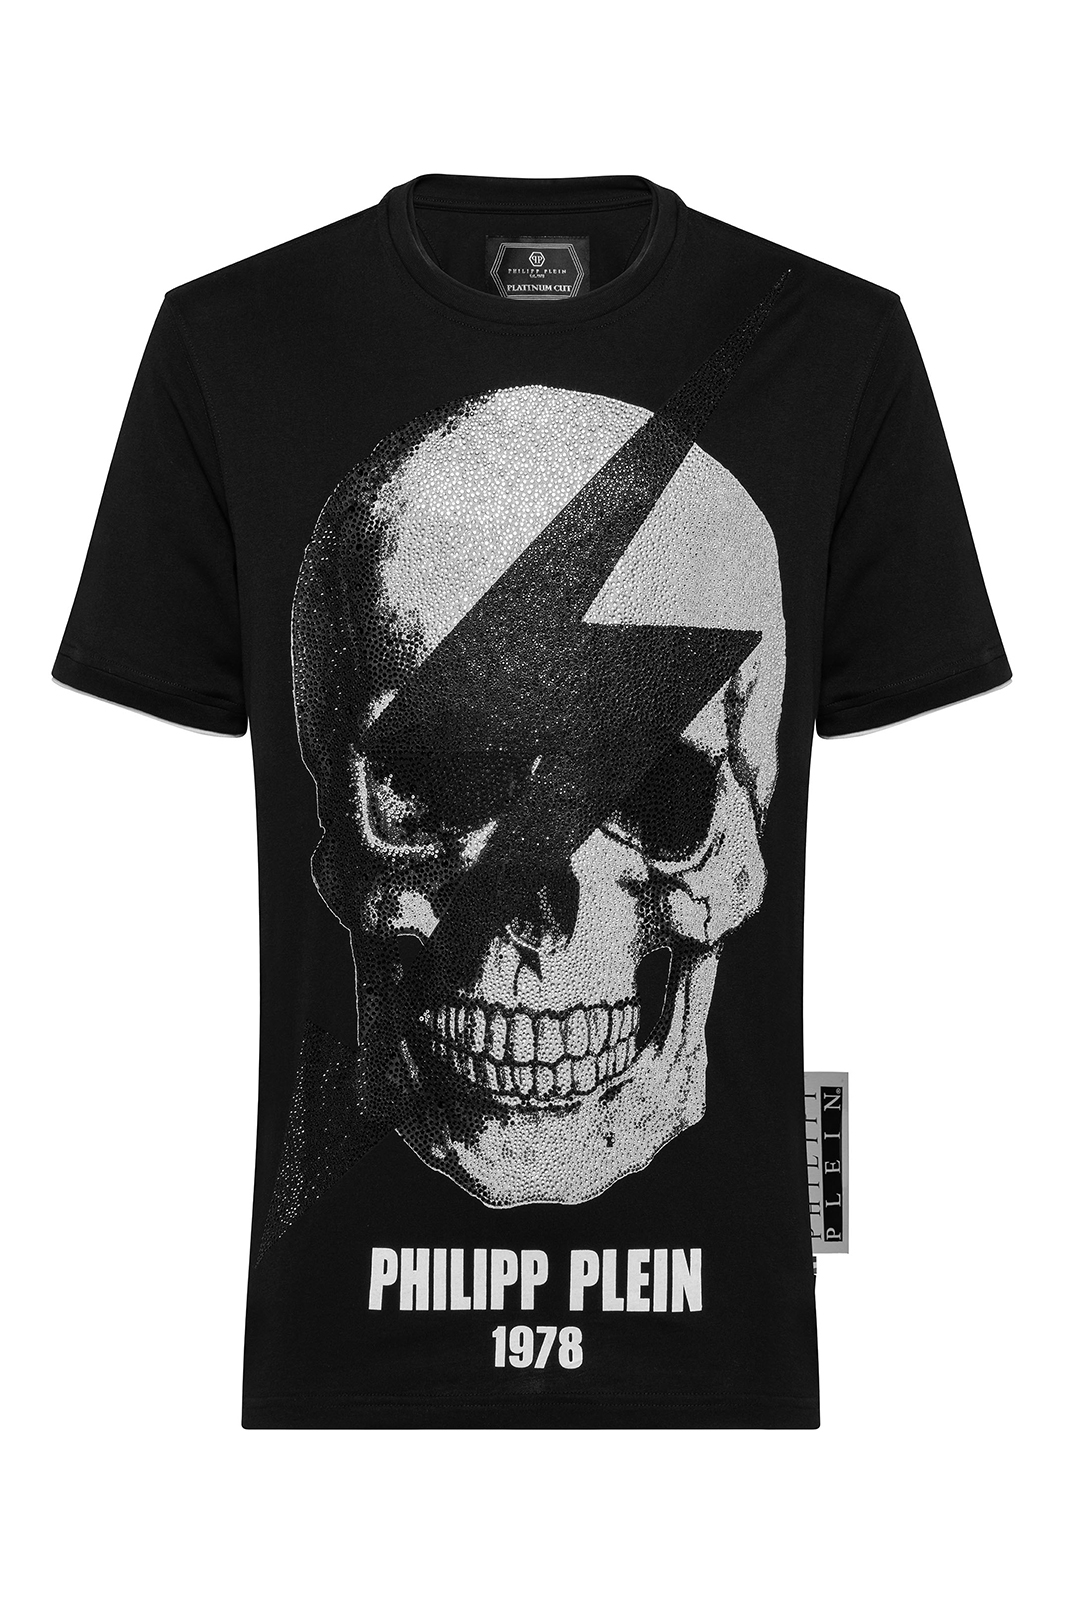 Philipp Plein Tee-shirt Noir Mtk3332 Pjy002n